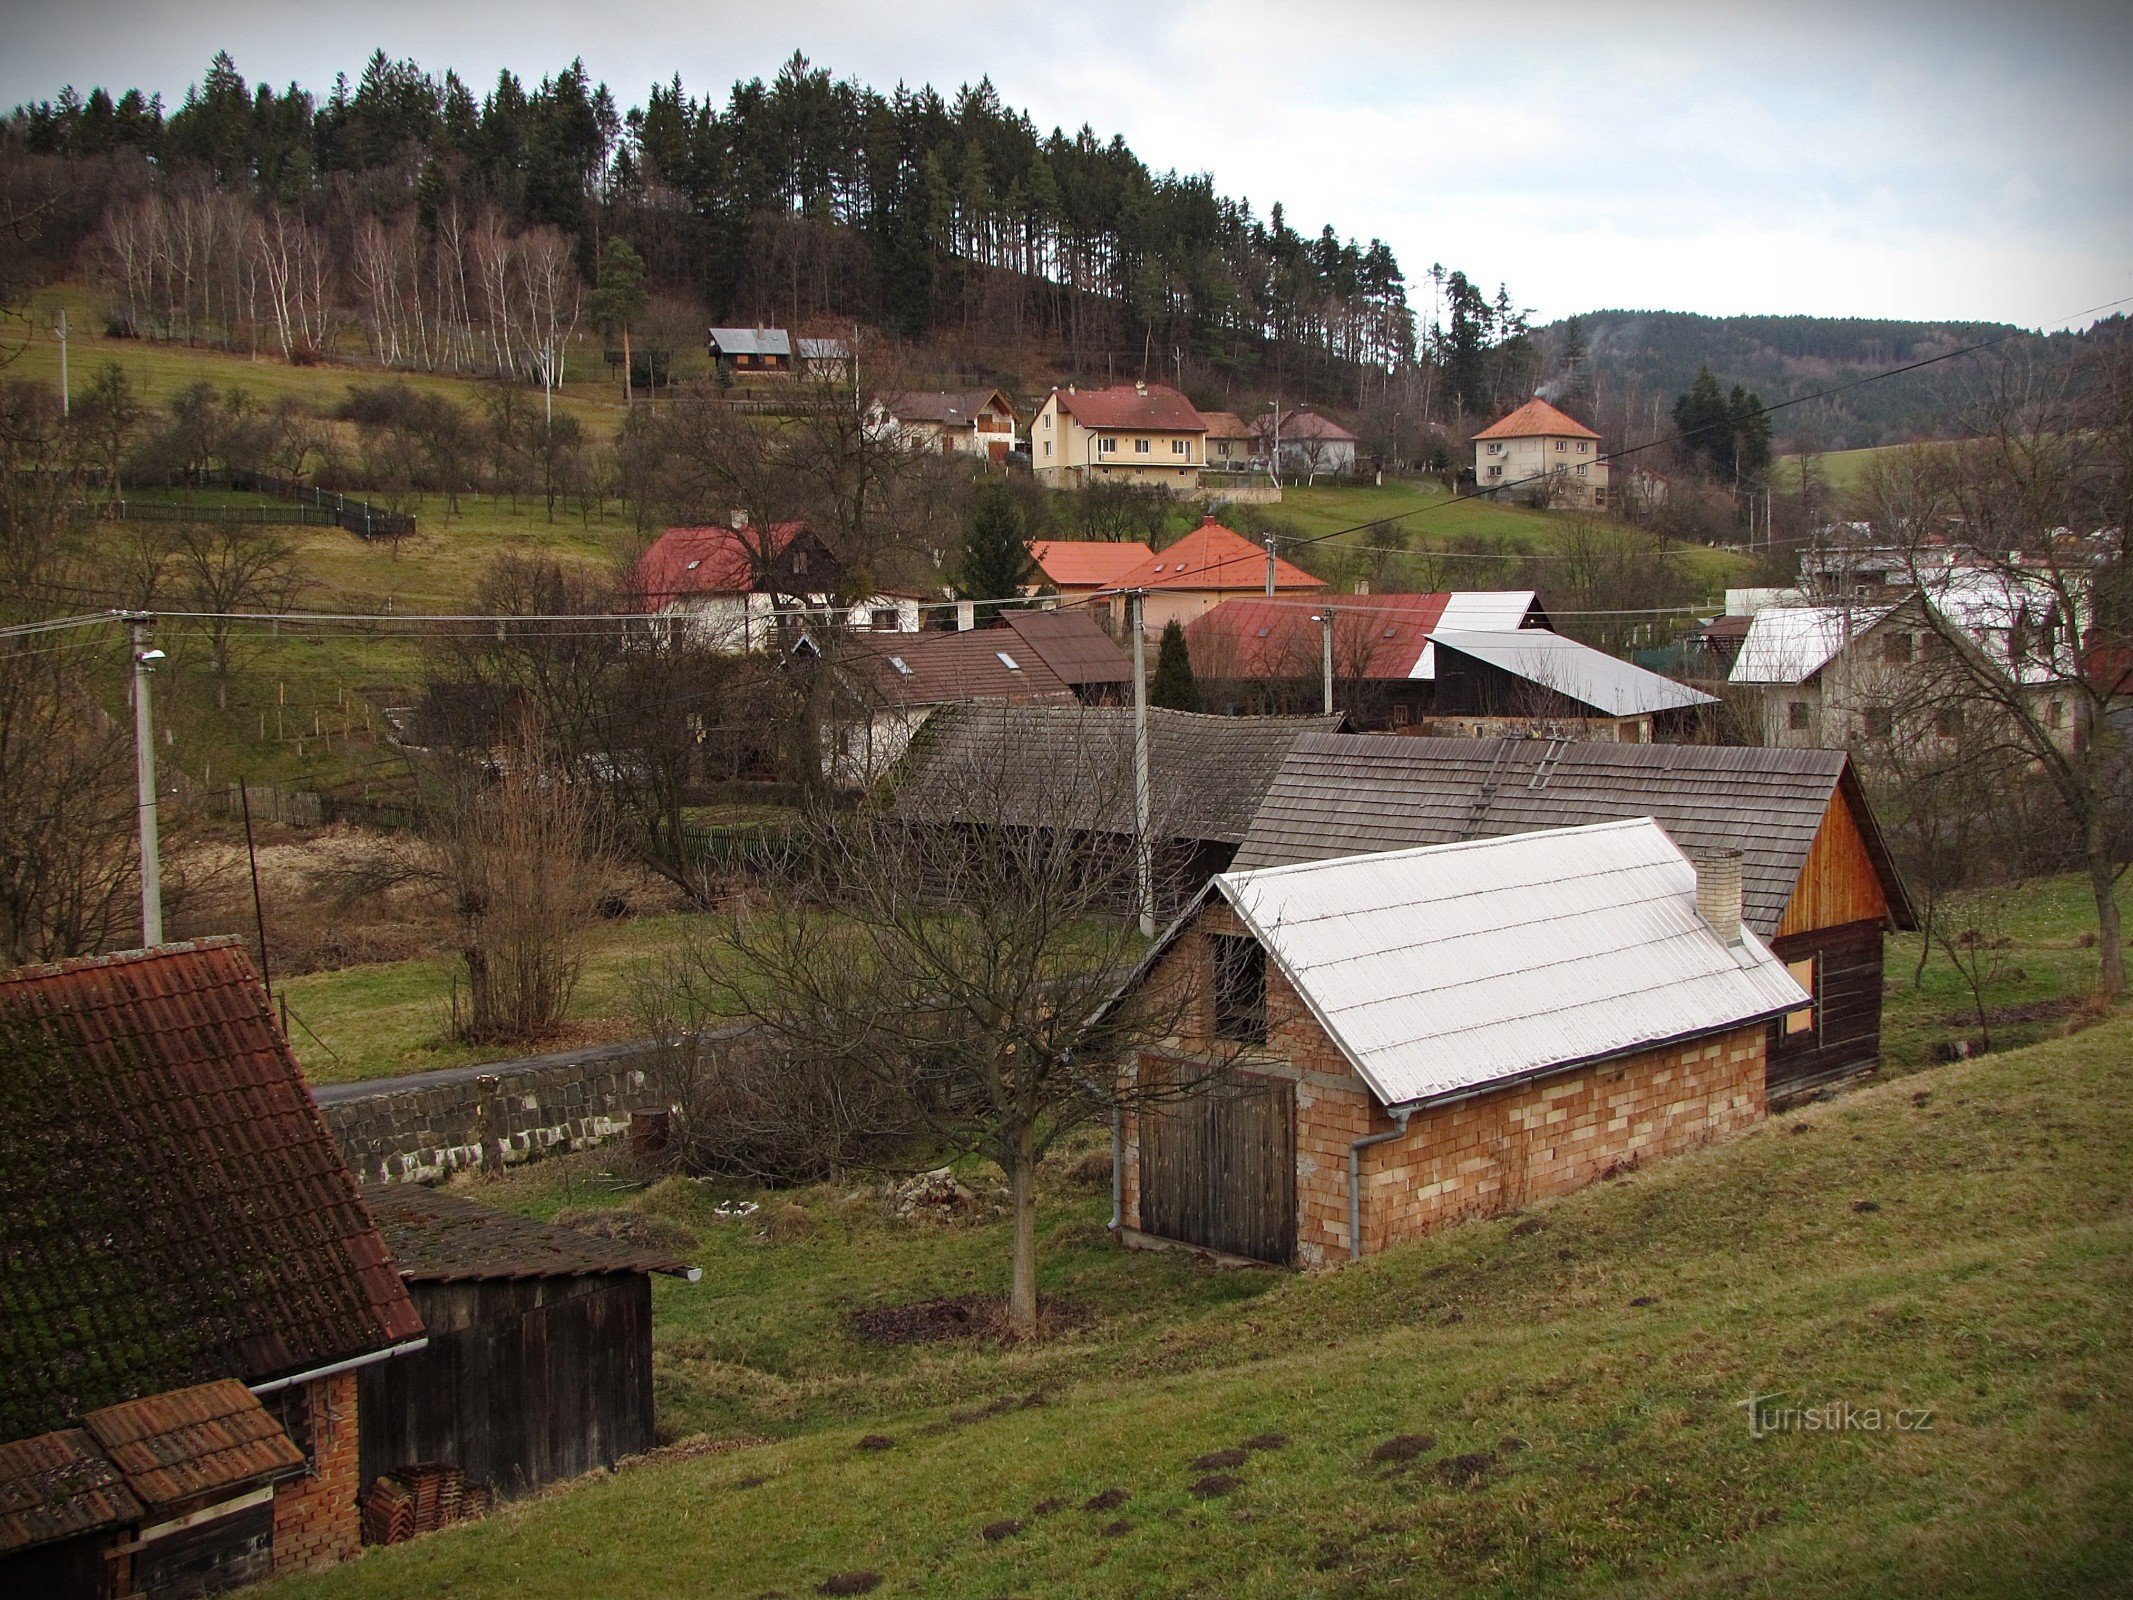 Μια βόλτα στο χωριό Vlčková